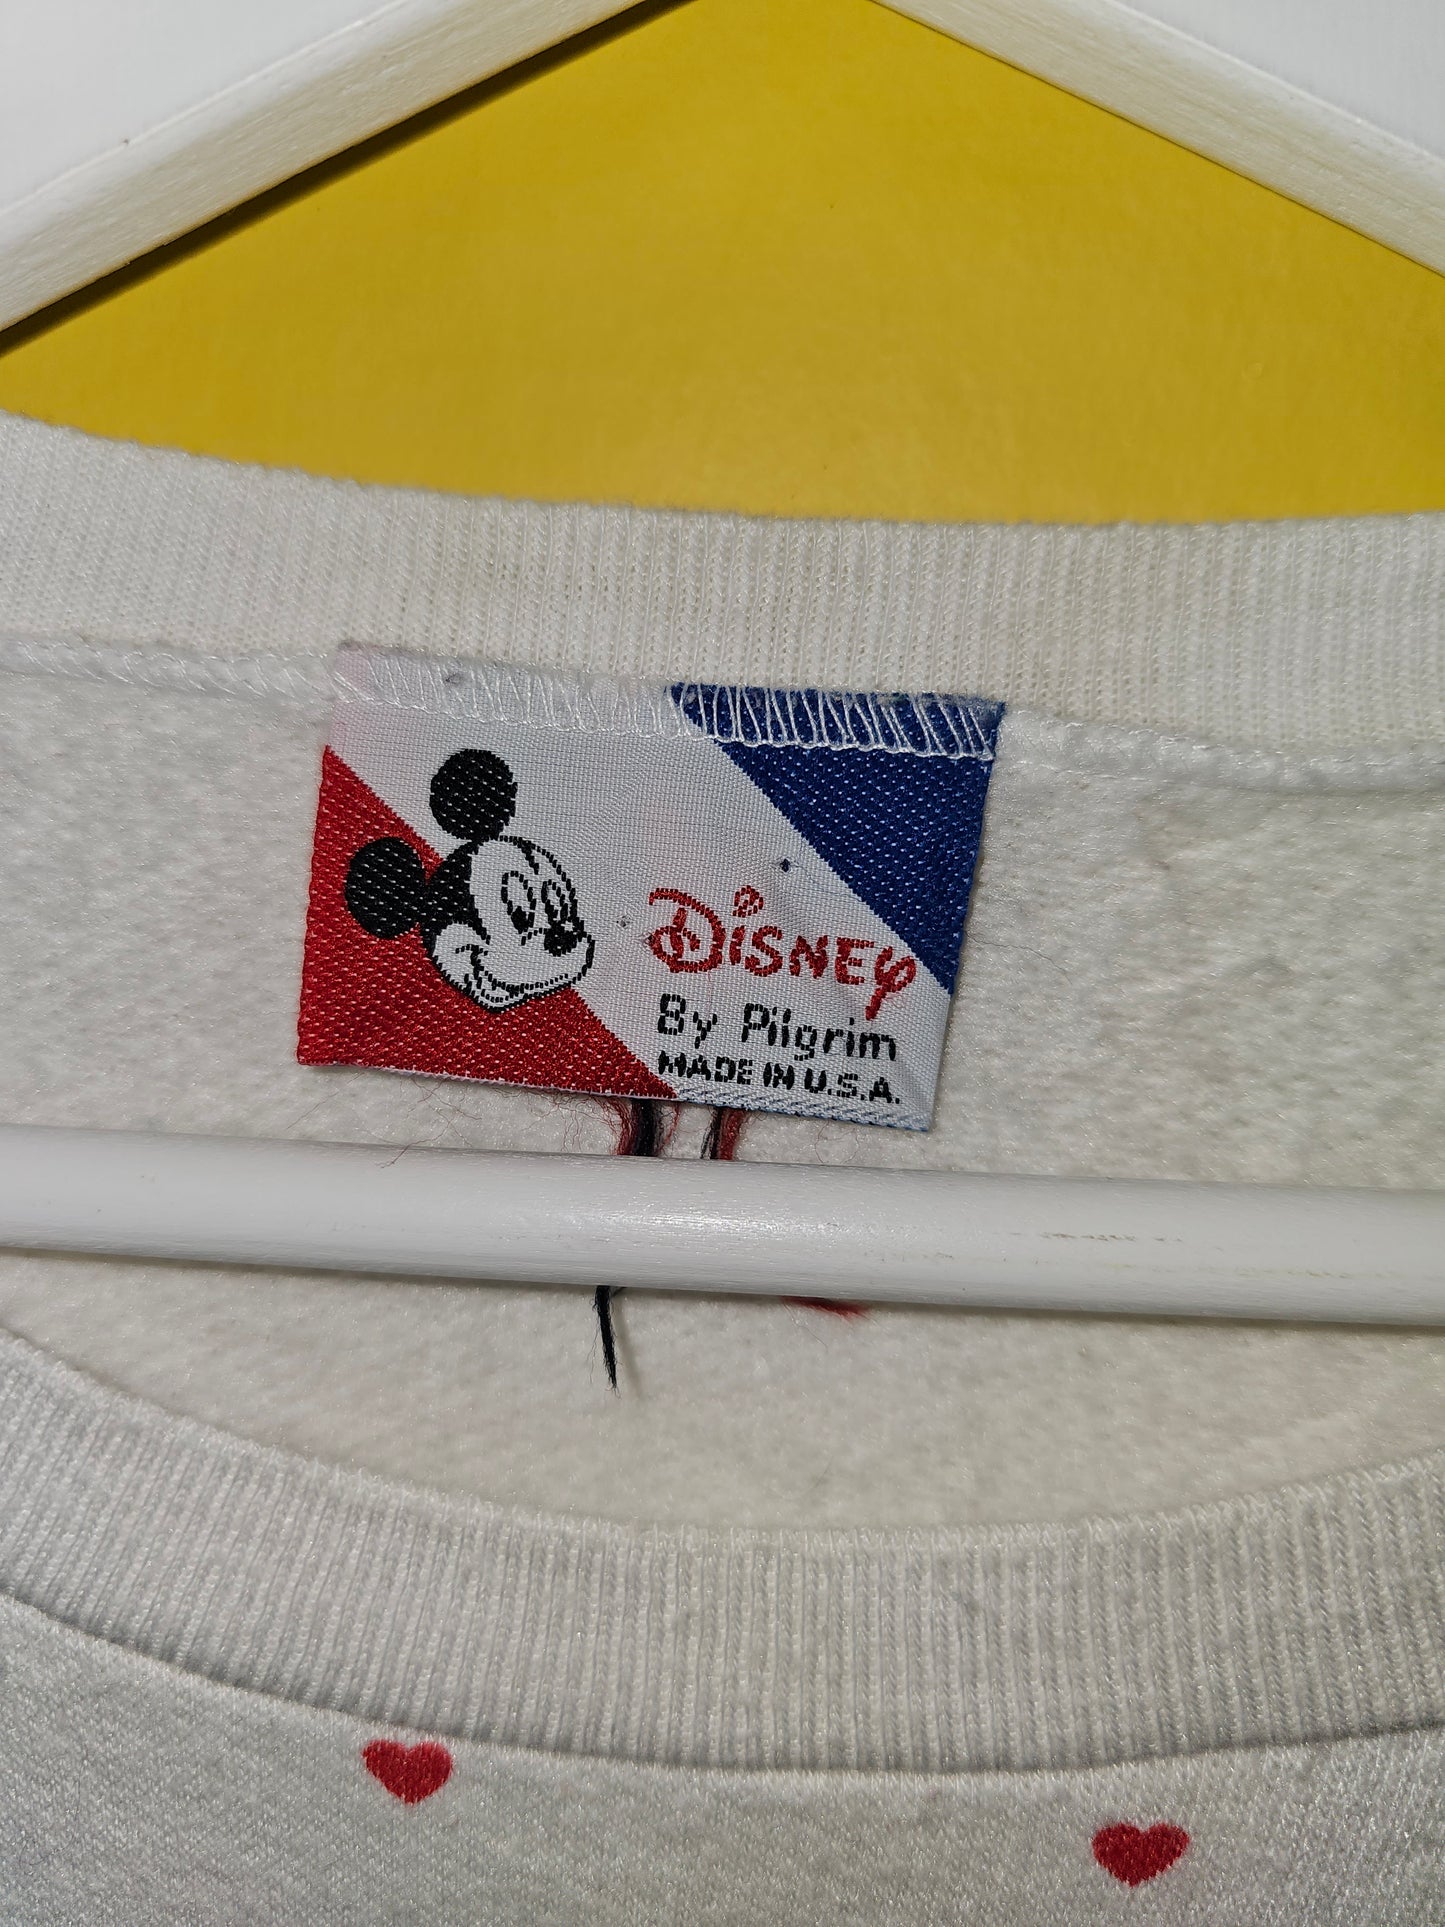 Mickey Mouse Polkadot Sweater (XL)